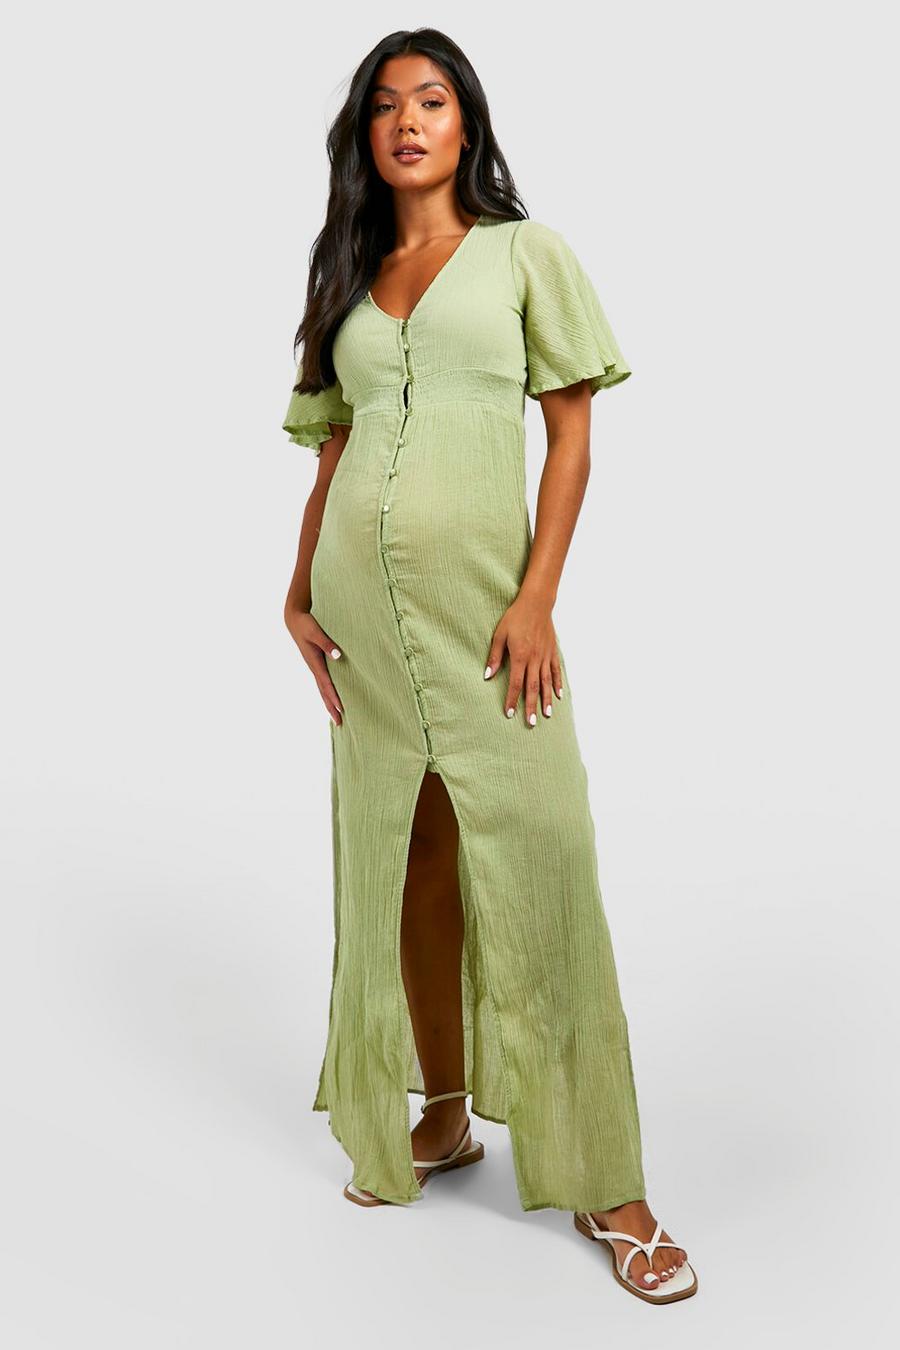 Maternité - Robe longue à dentelle style bohème, Sage